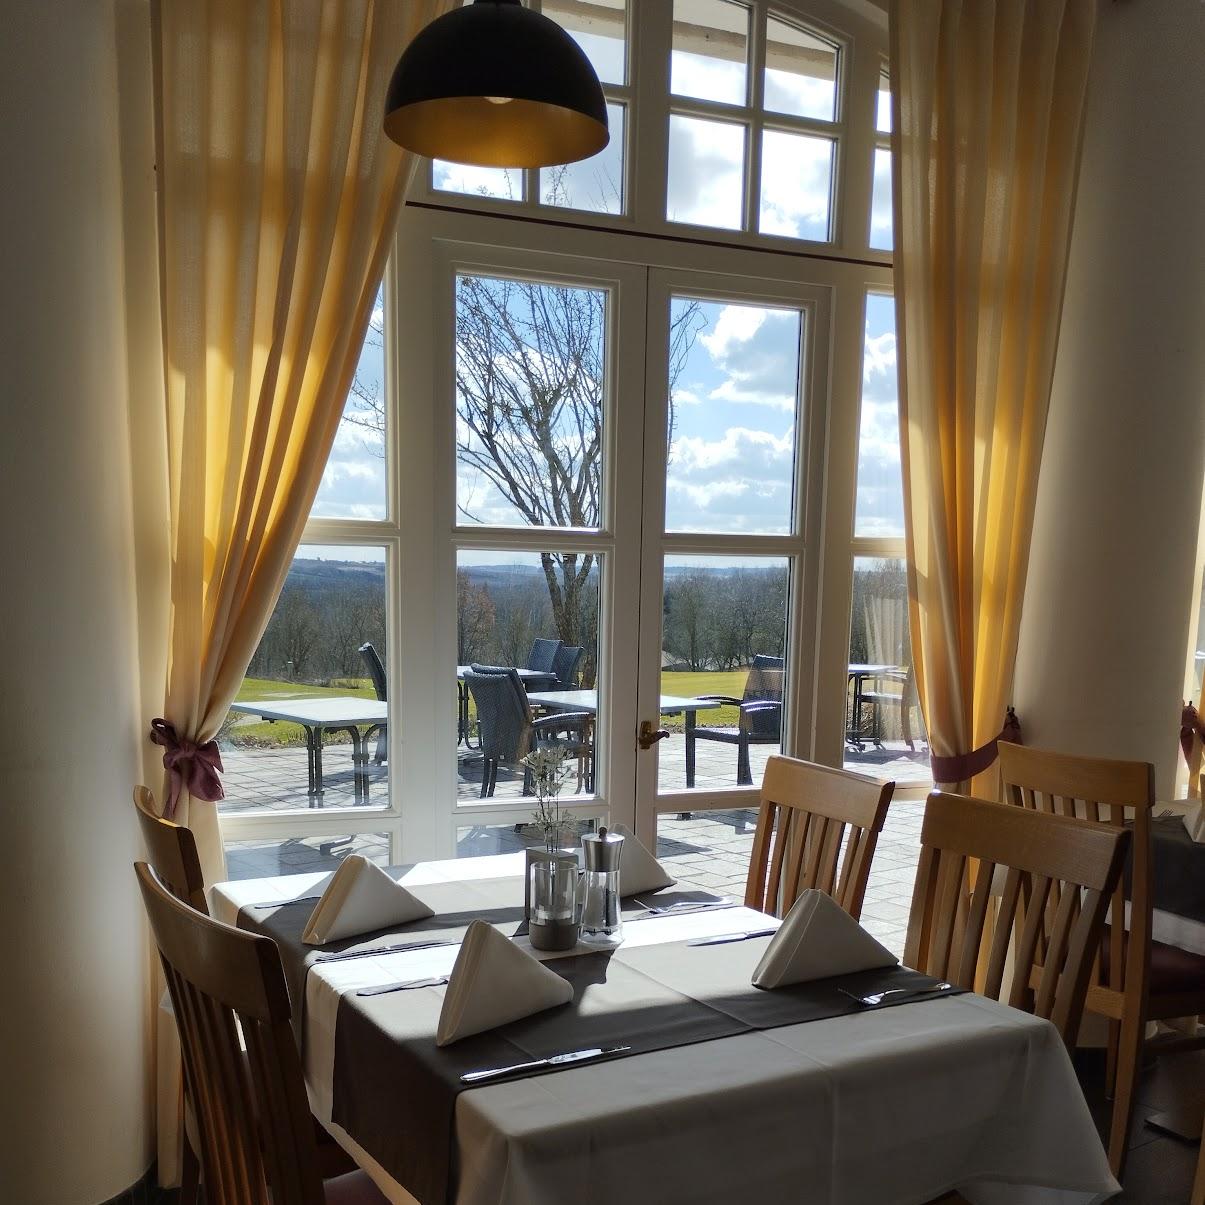 Restaurant "San Michele" in Reisbach